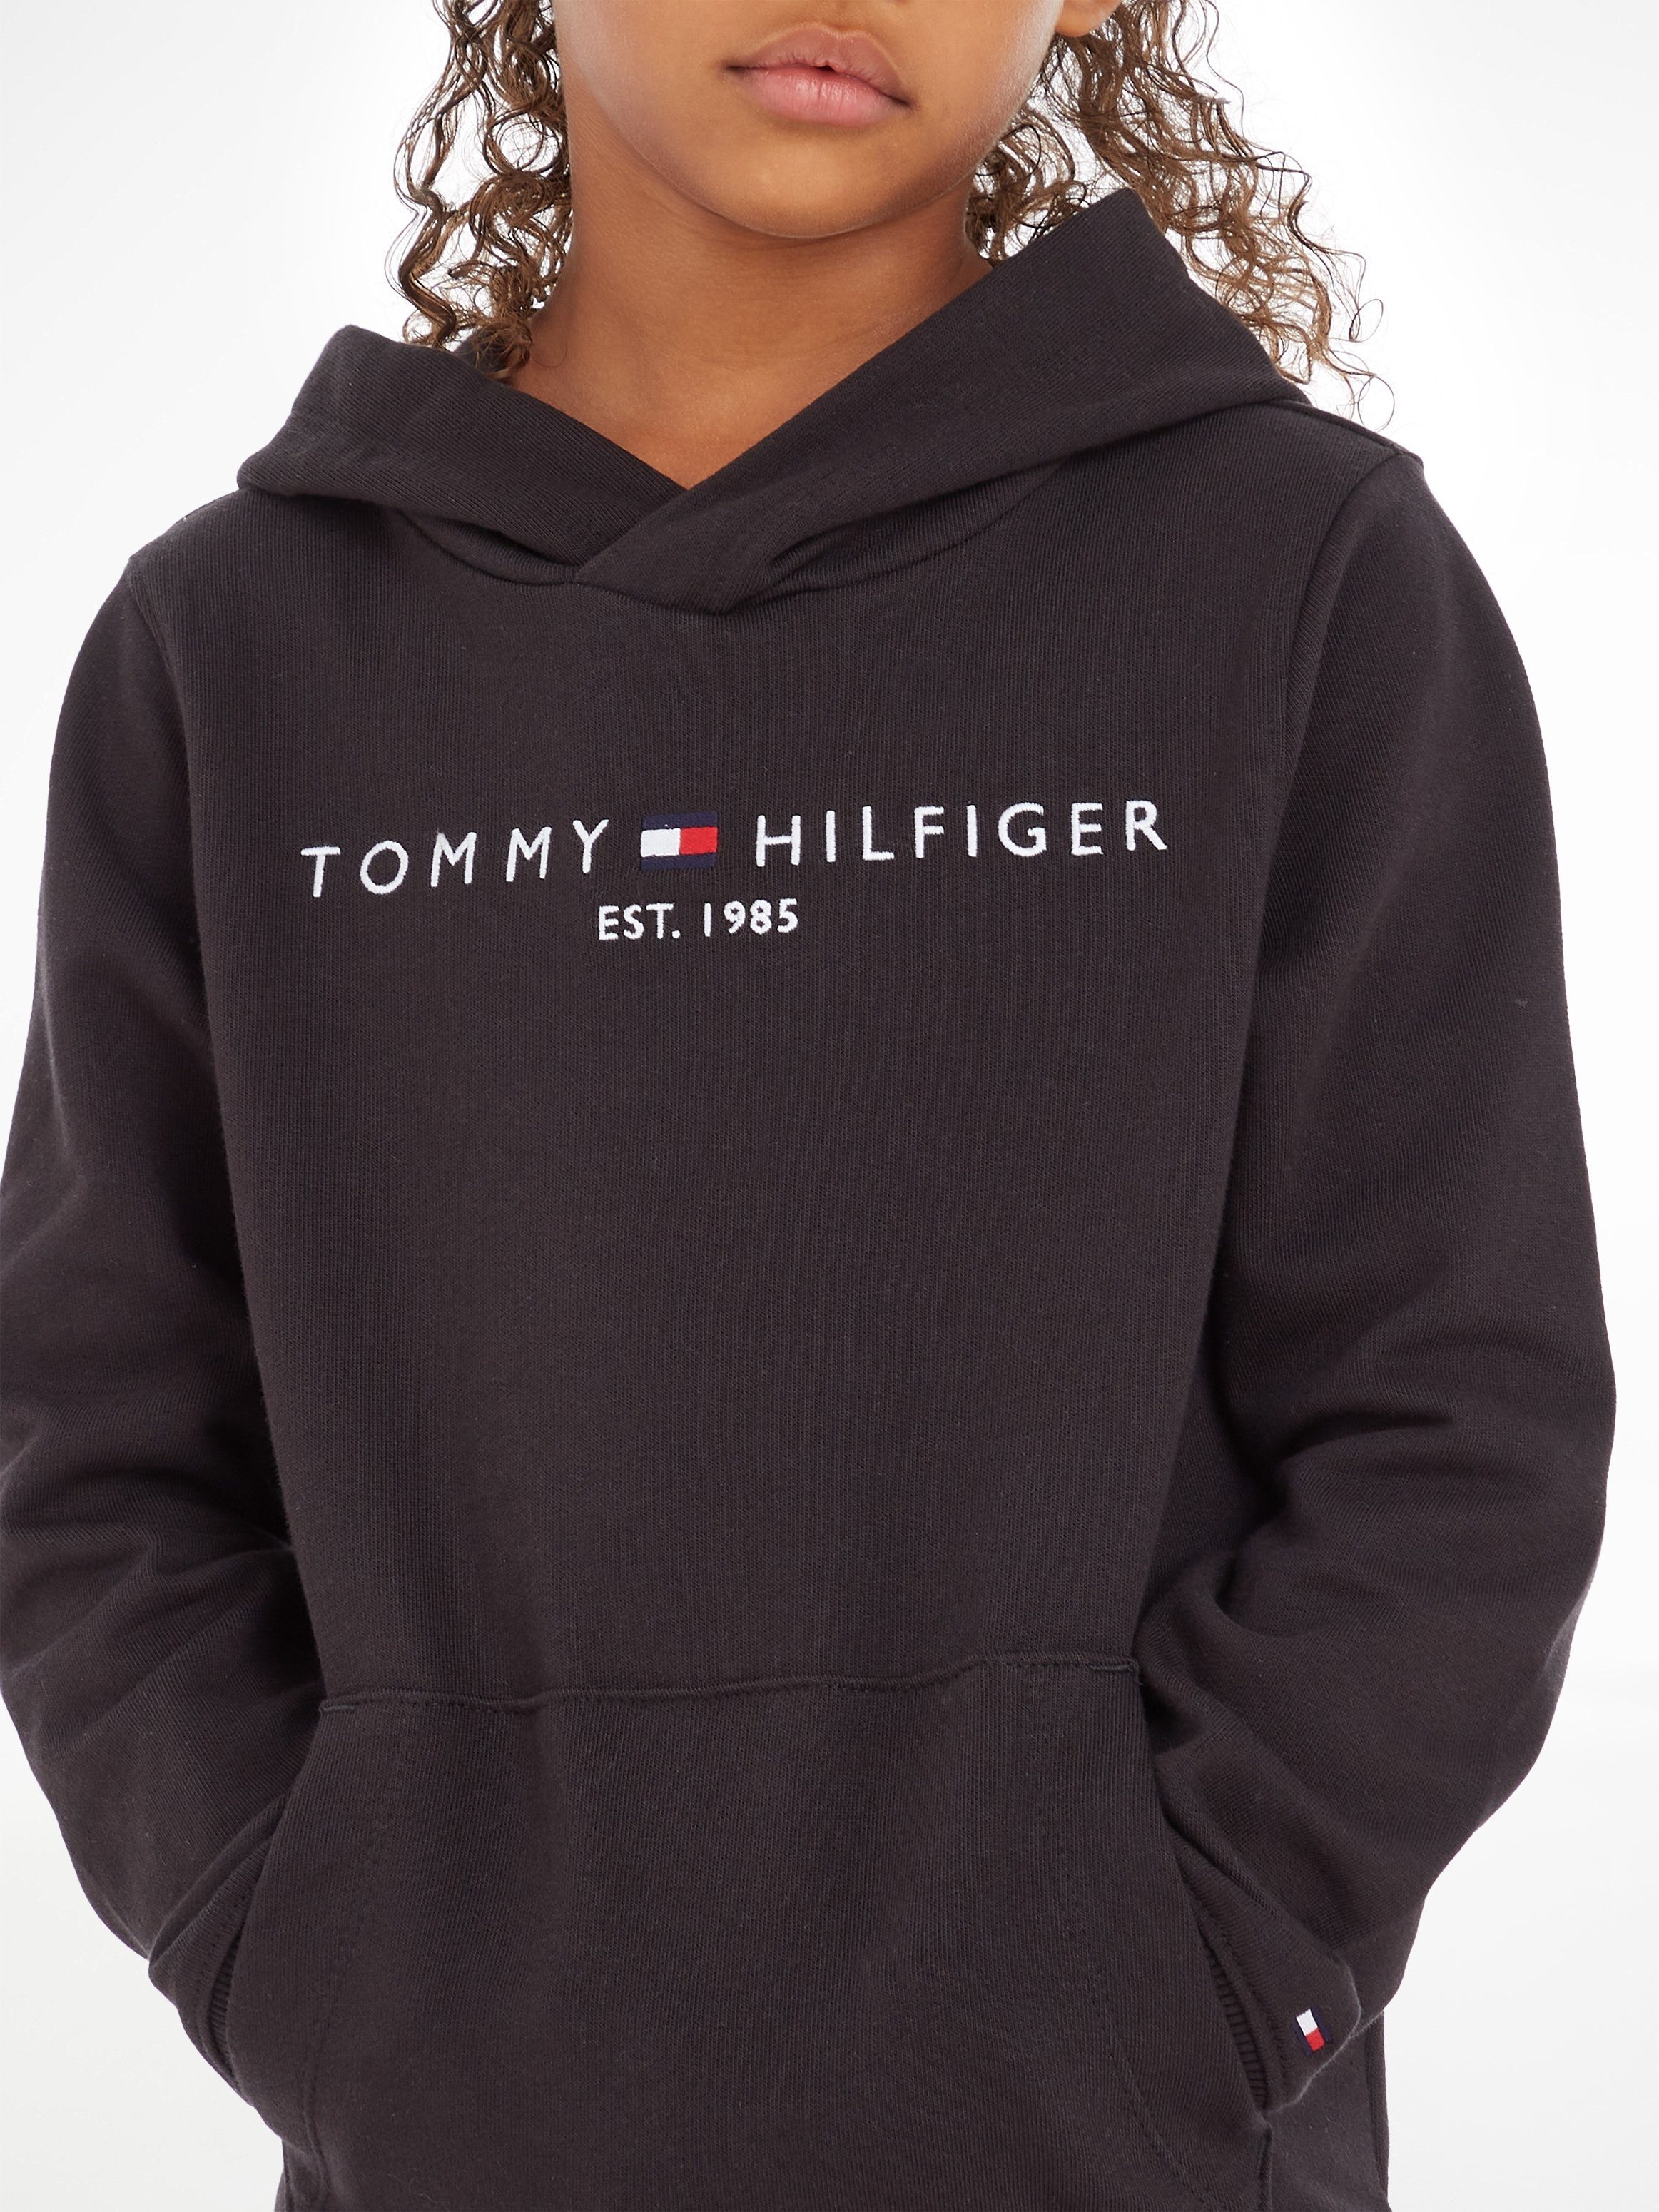 Tommy Hilfiger Kapuzensweatshirt ESSENTIAL Junior MiniMe,für HOODIE Kinder Jungen Kids und Mädchen